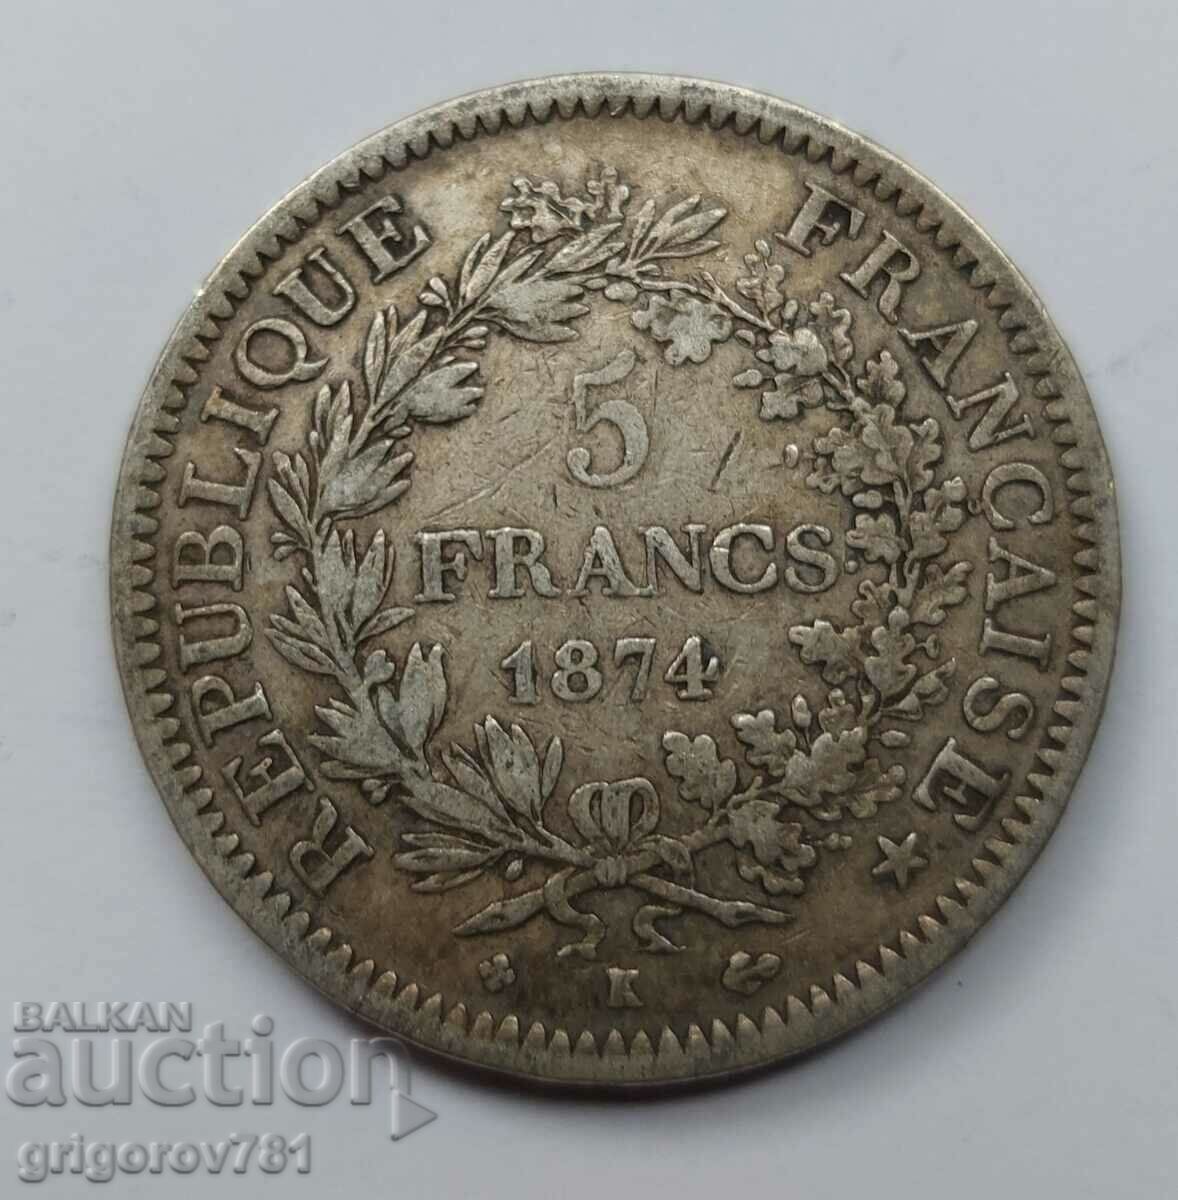 5 Franci Argint Franta 1874 A - Moneda de argint #153